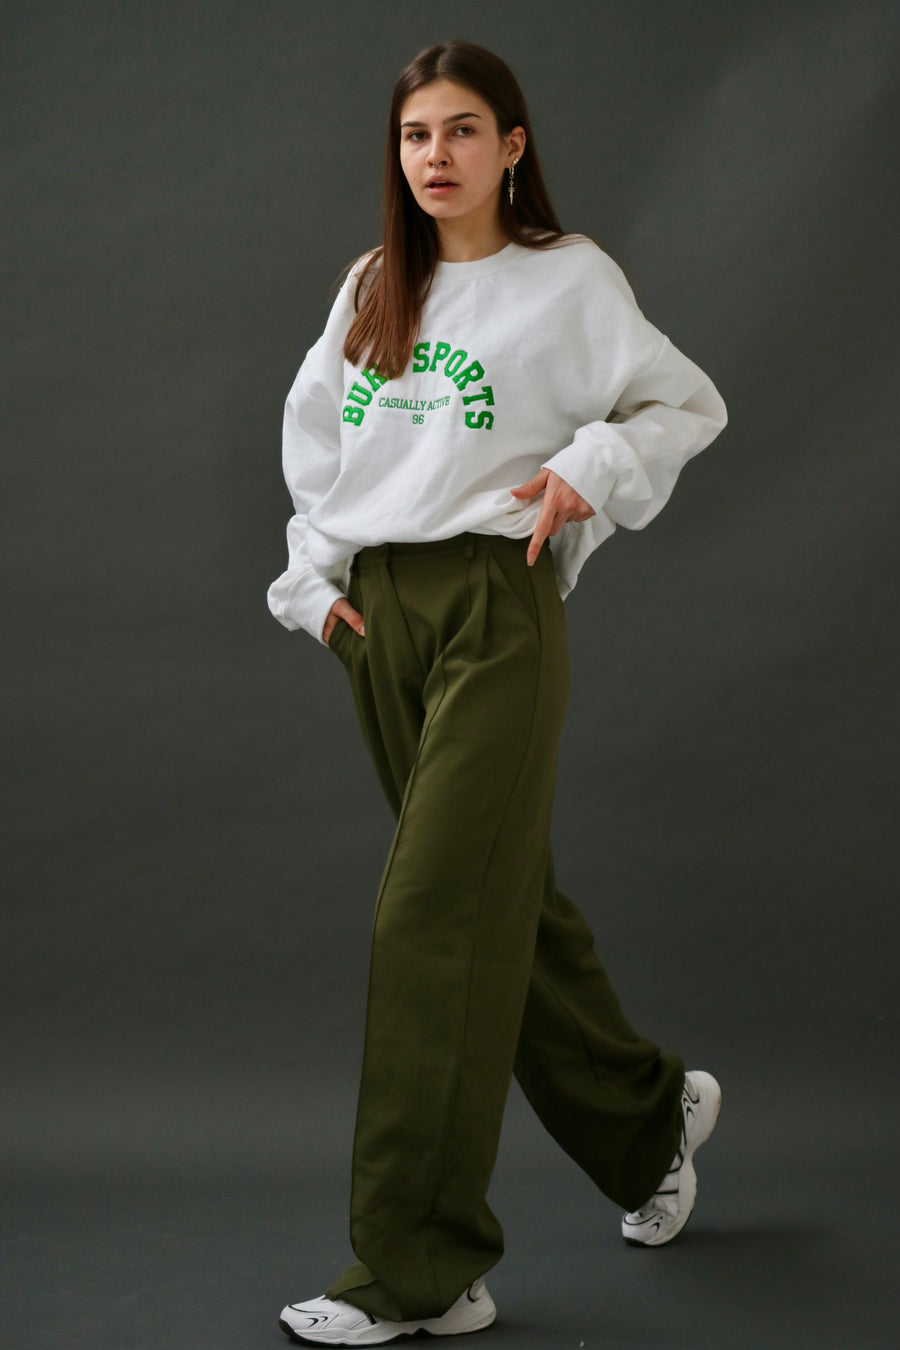 Khaki Green Gretta Trousers